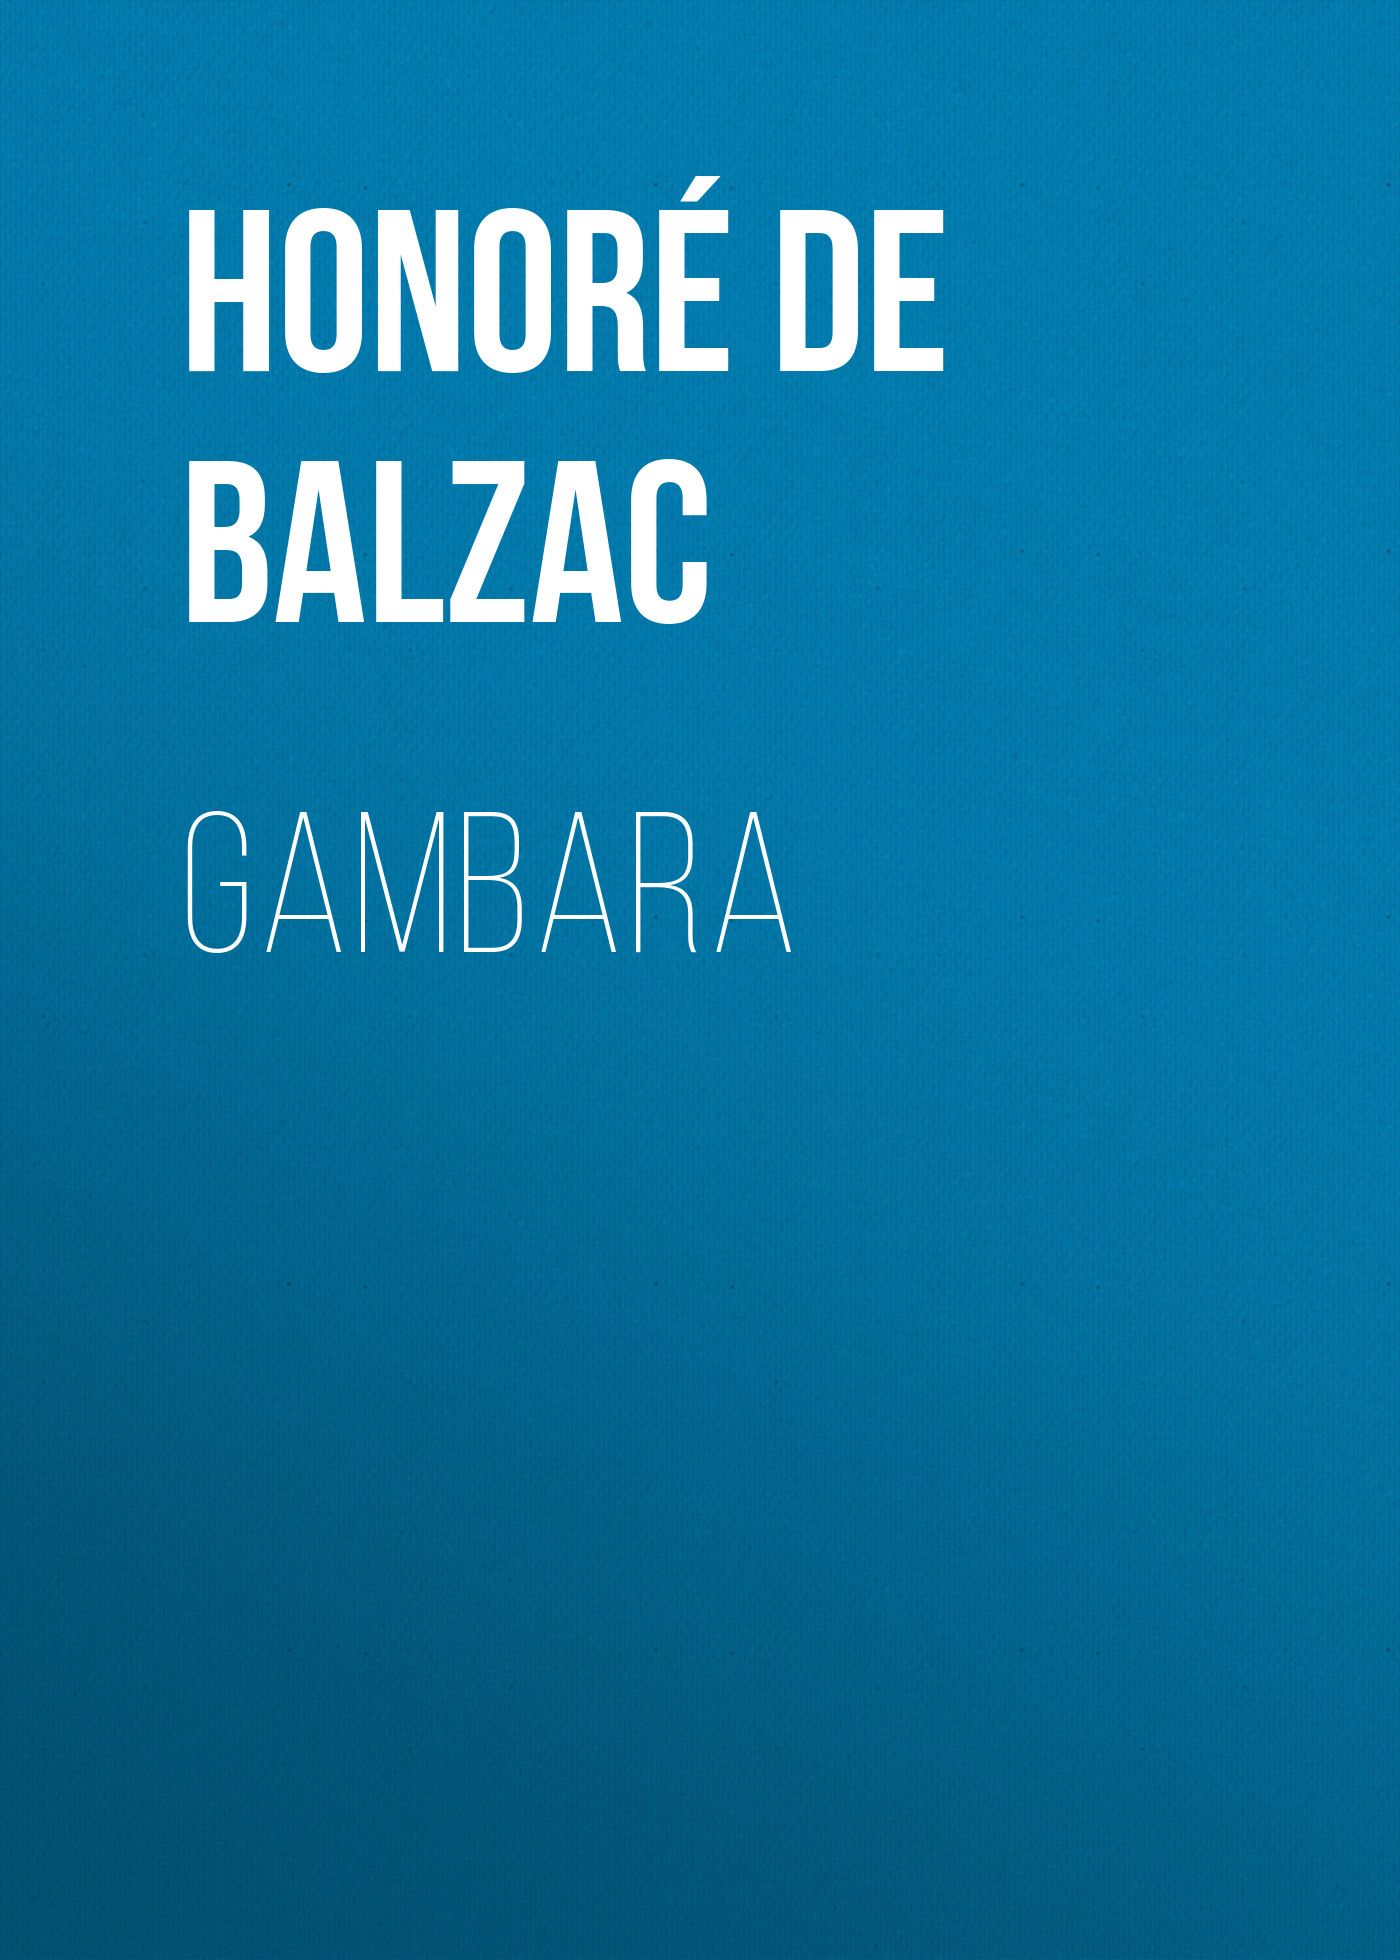 Книга Gambara из серии , созданная Honoré Balzac, может относится к жанру Литература 19 века, Зарубежная старинная литература, Зарубежная классика. Стоимость электронной книги Gambara с идентификатором 25021019 составляет 0 руб.